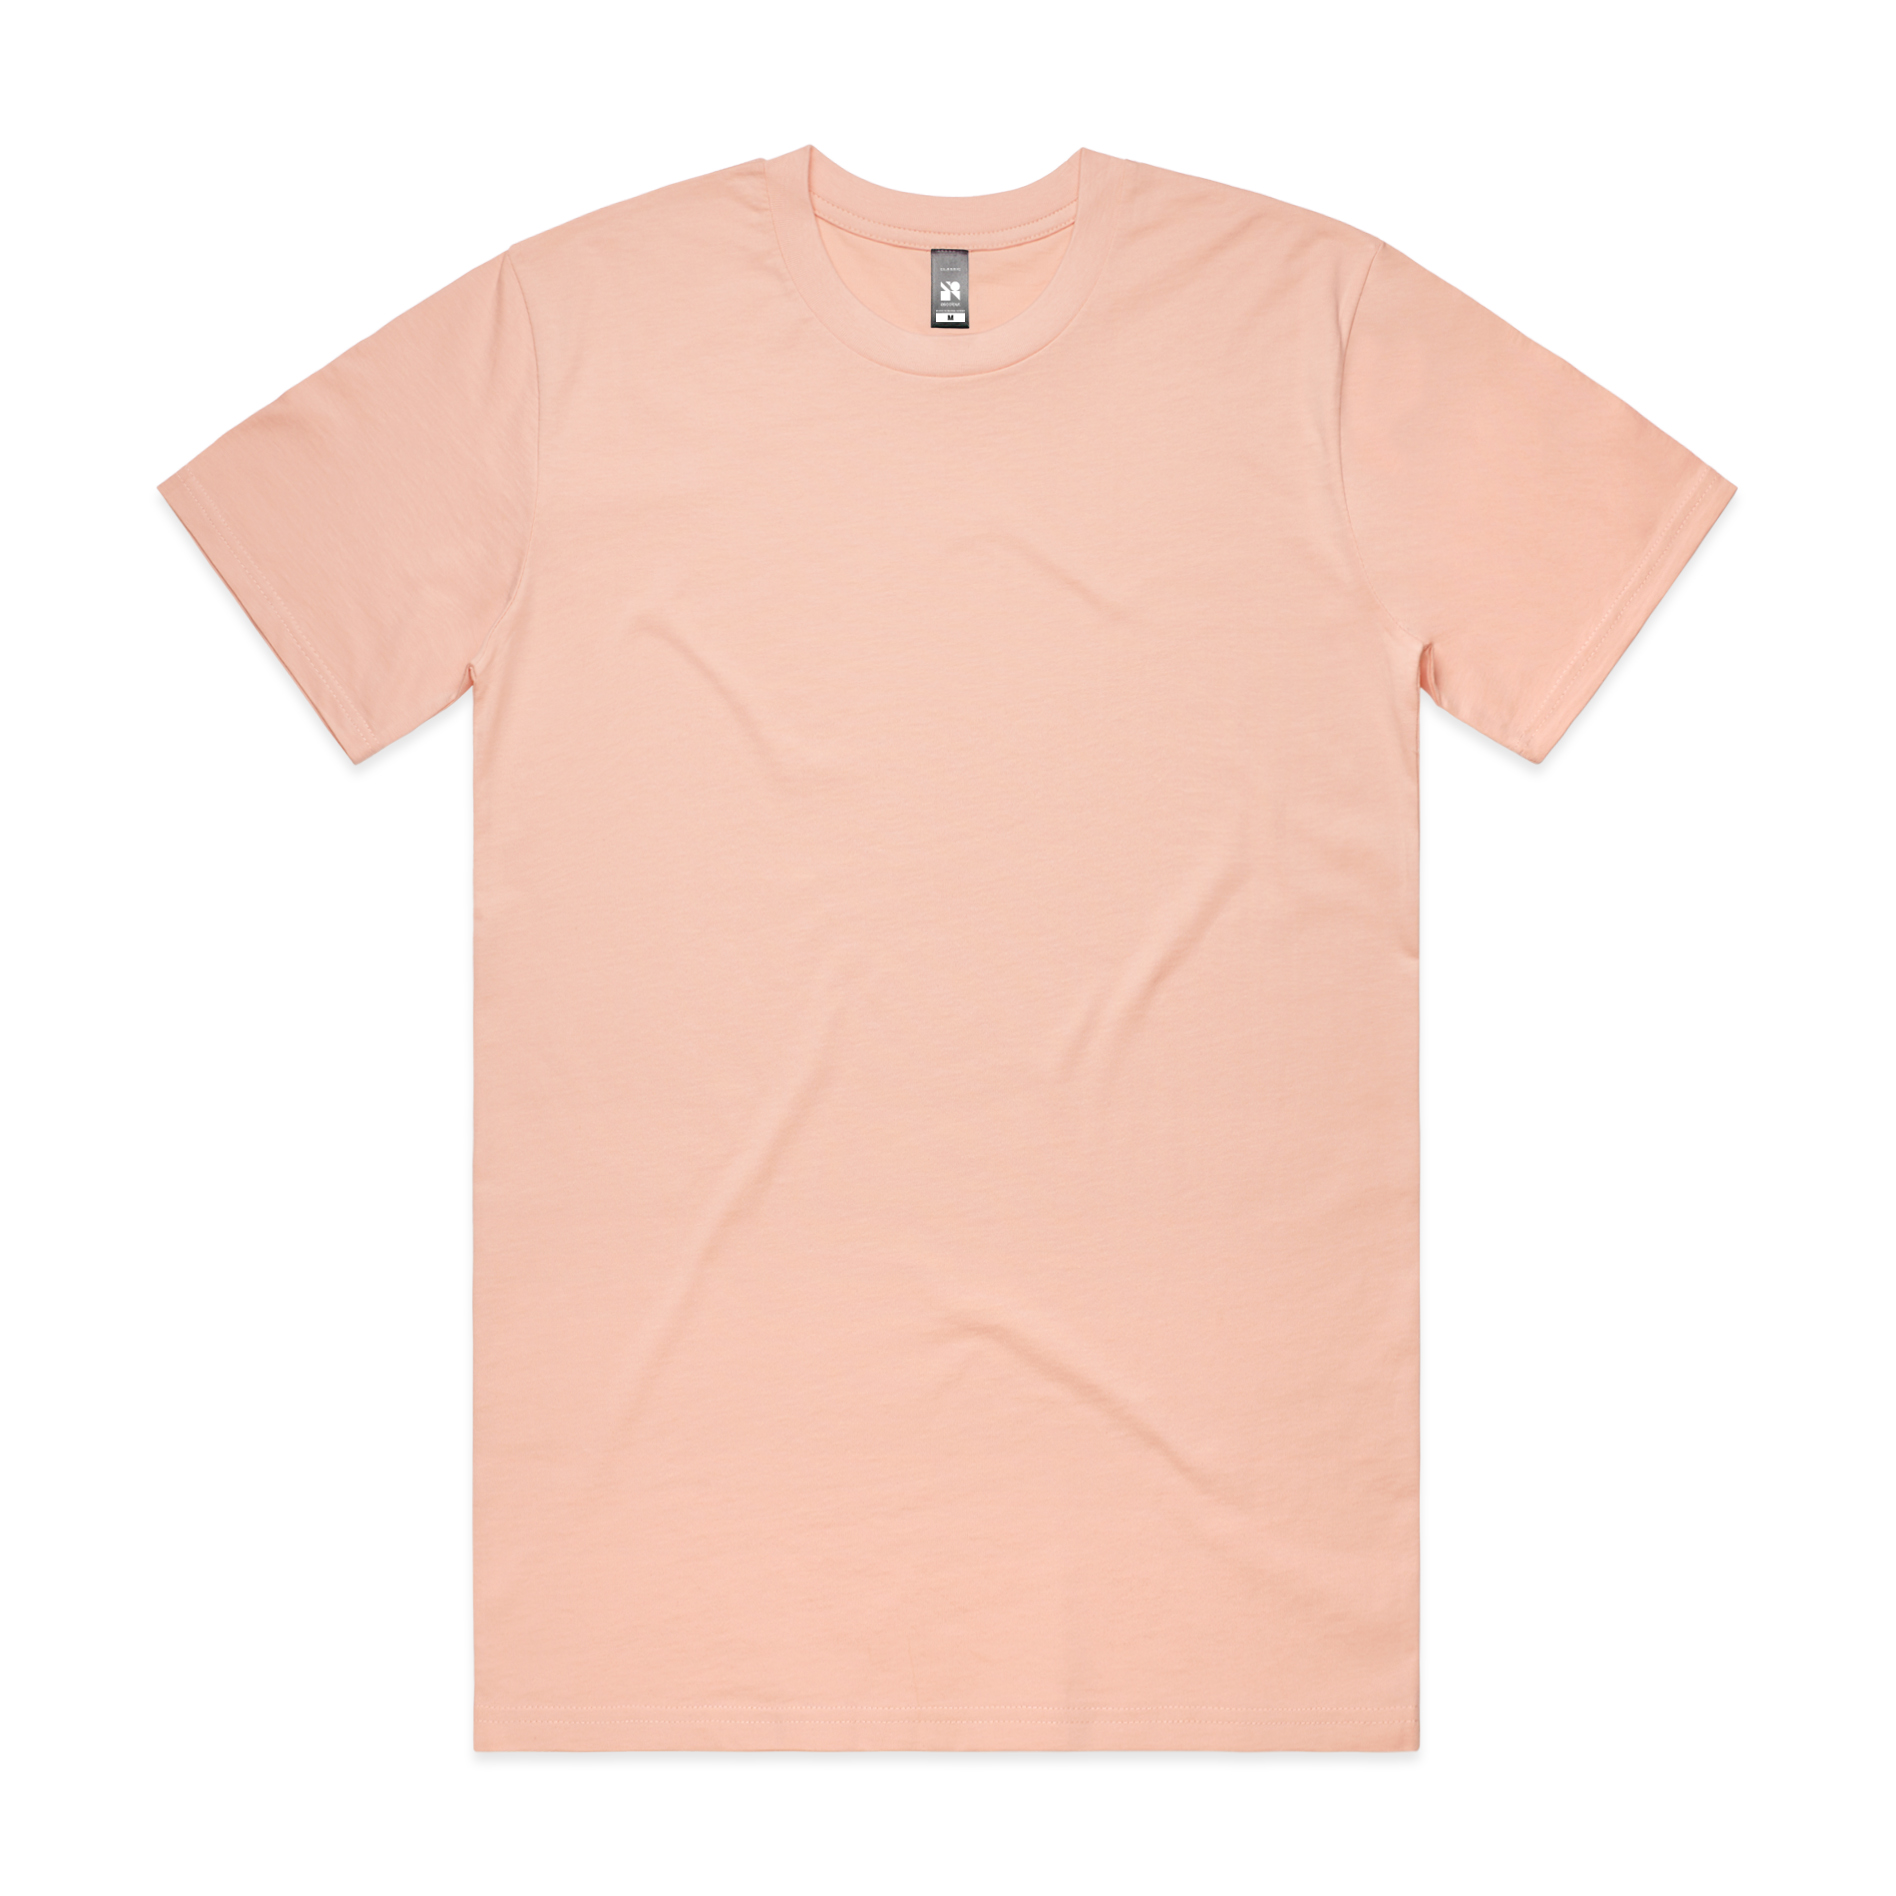 Men's AS Colour Classic Tee - Pale Pink - Uniform Edit